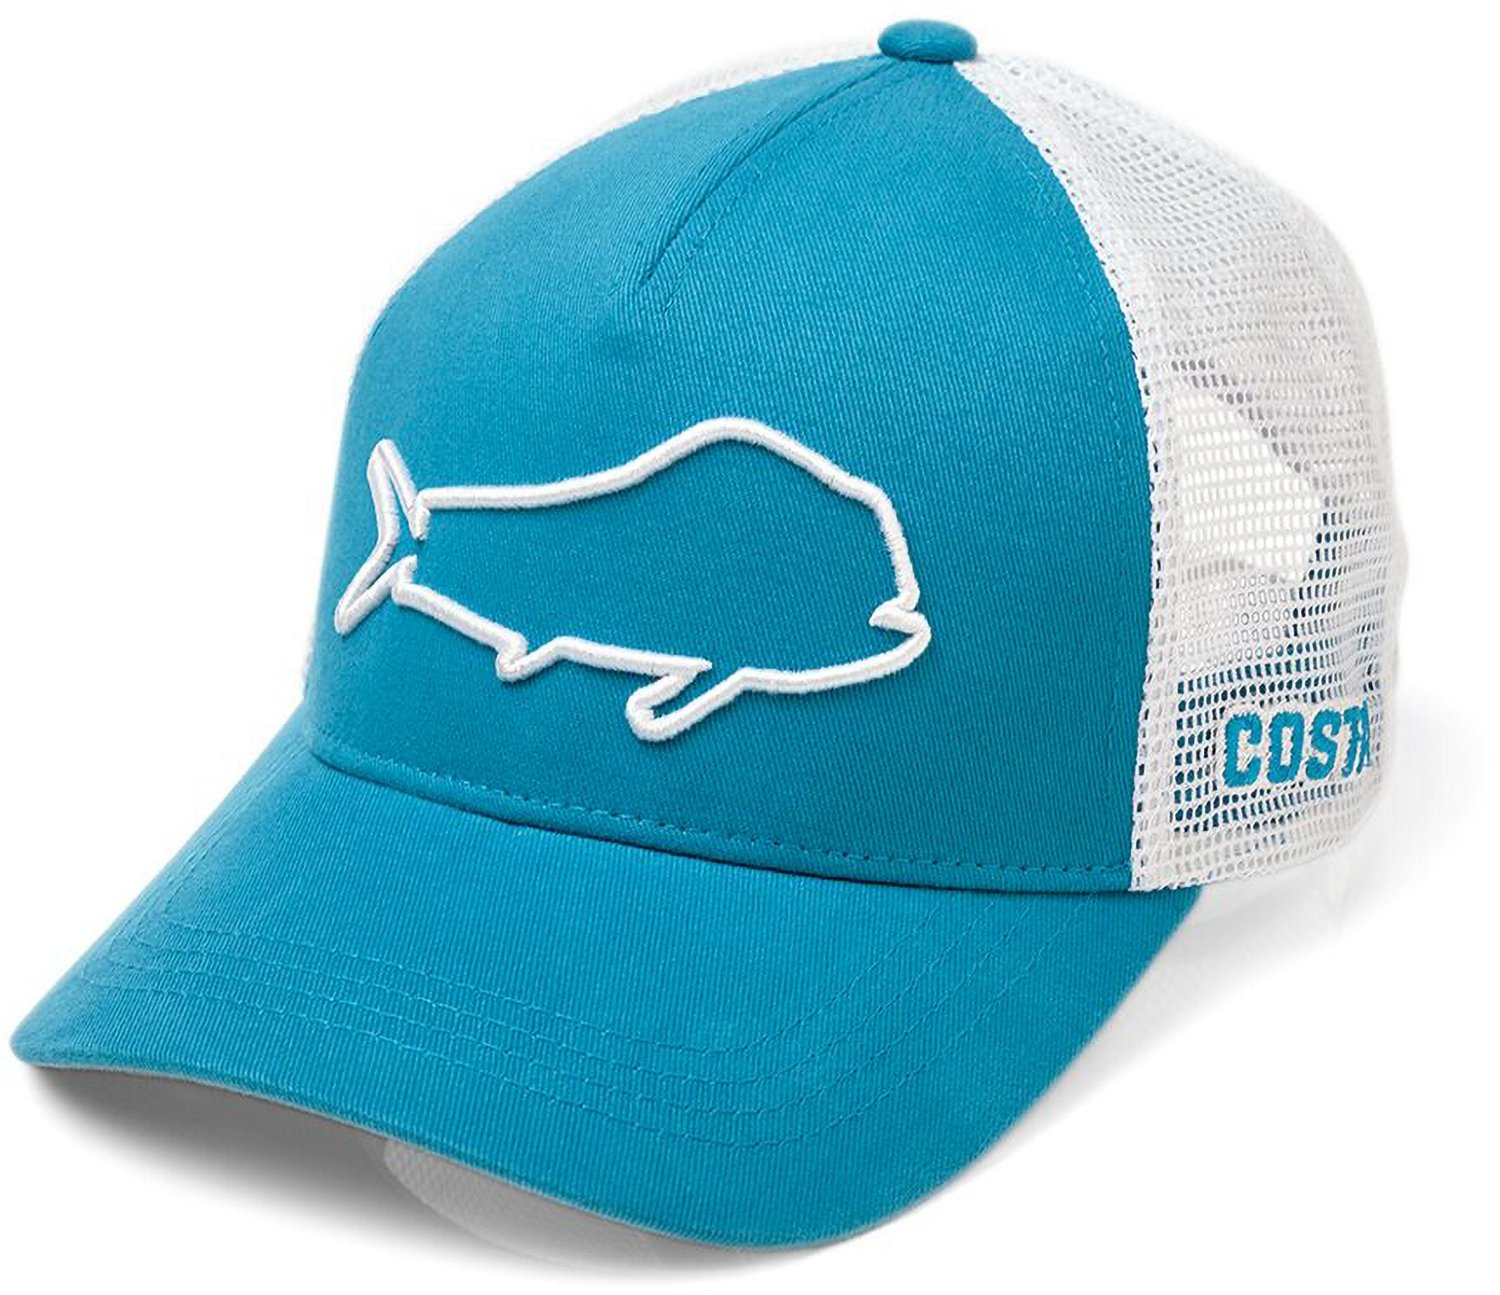 Costa Dorado Stealth Trucker Hat